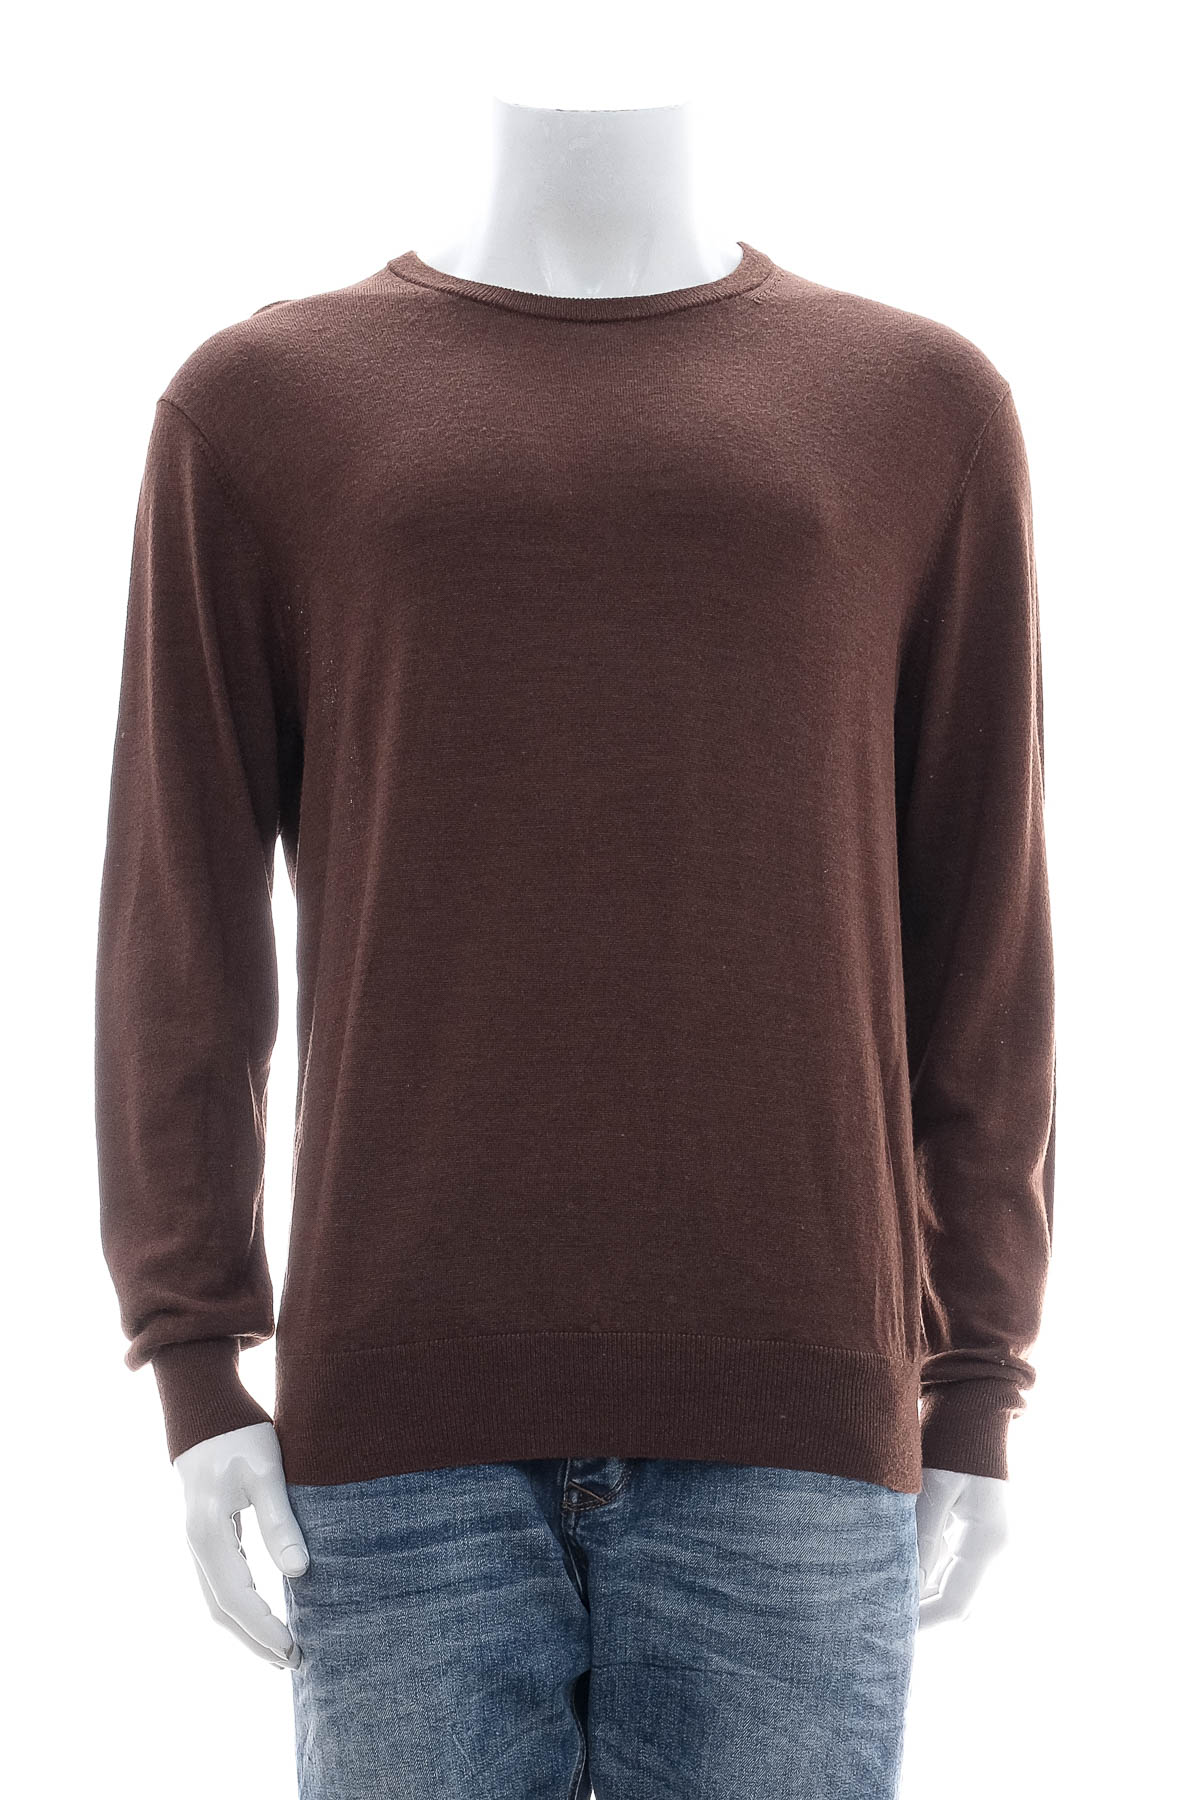 Men's sweater - UNIQLO - 0